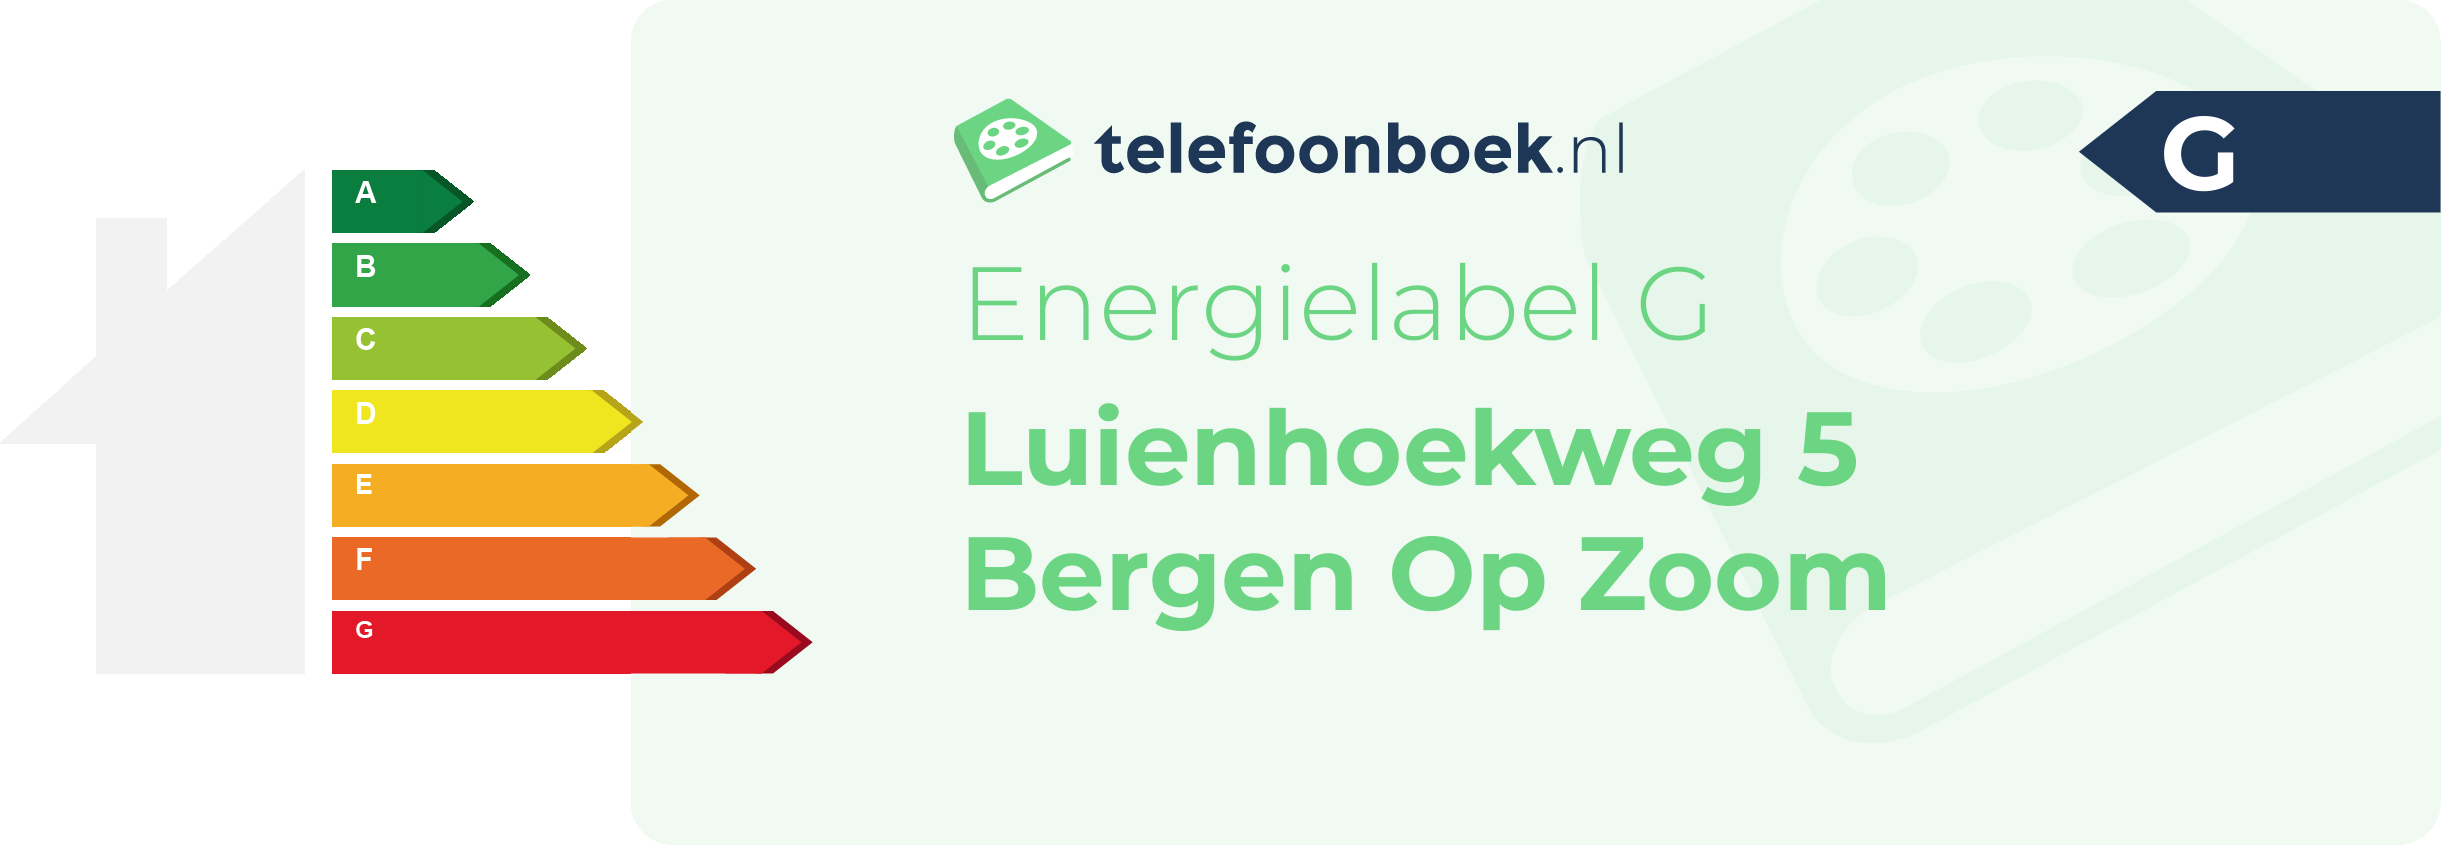 Energielabel Luienhoekweg 5 Bergen Op Zoom